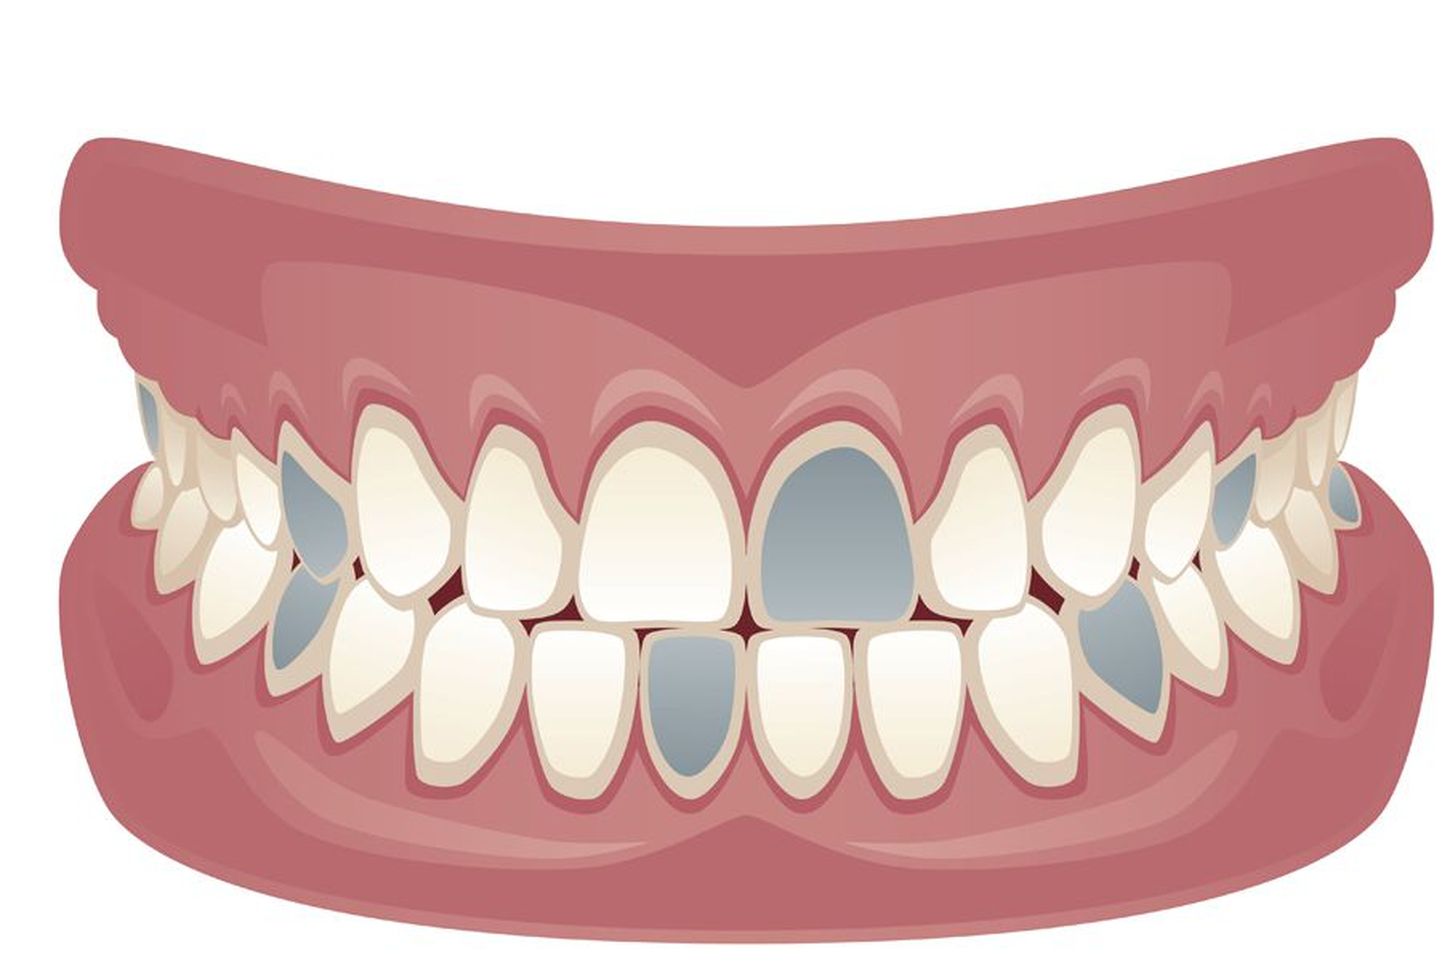 Halliks värvitud hambad illustreerivad neljandikku hambaraviteenuse pakkujatest, kes on täiskasvanute hambaravihüvitise süsteemiga liitunud.